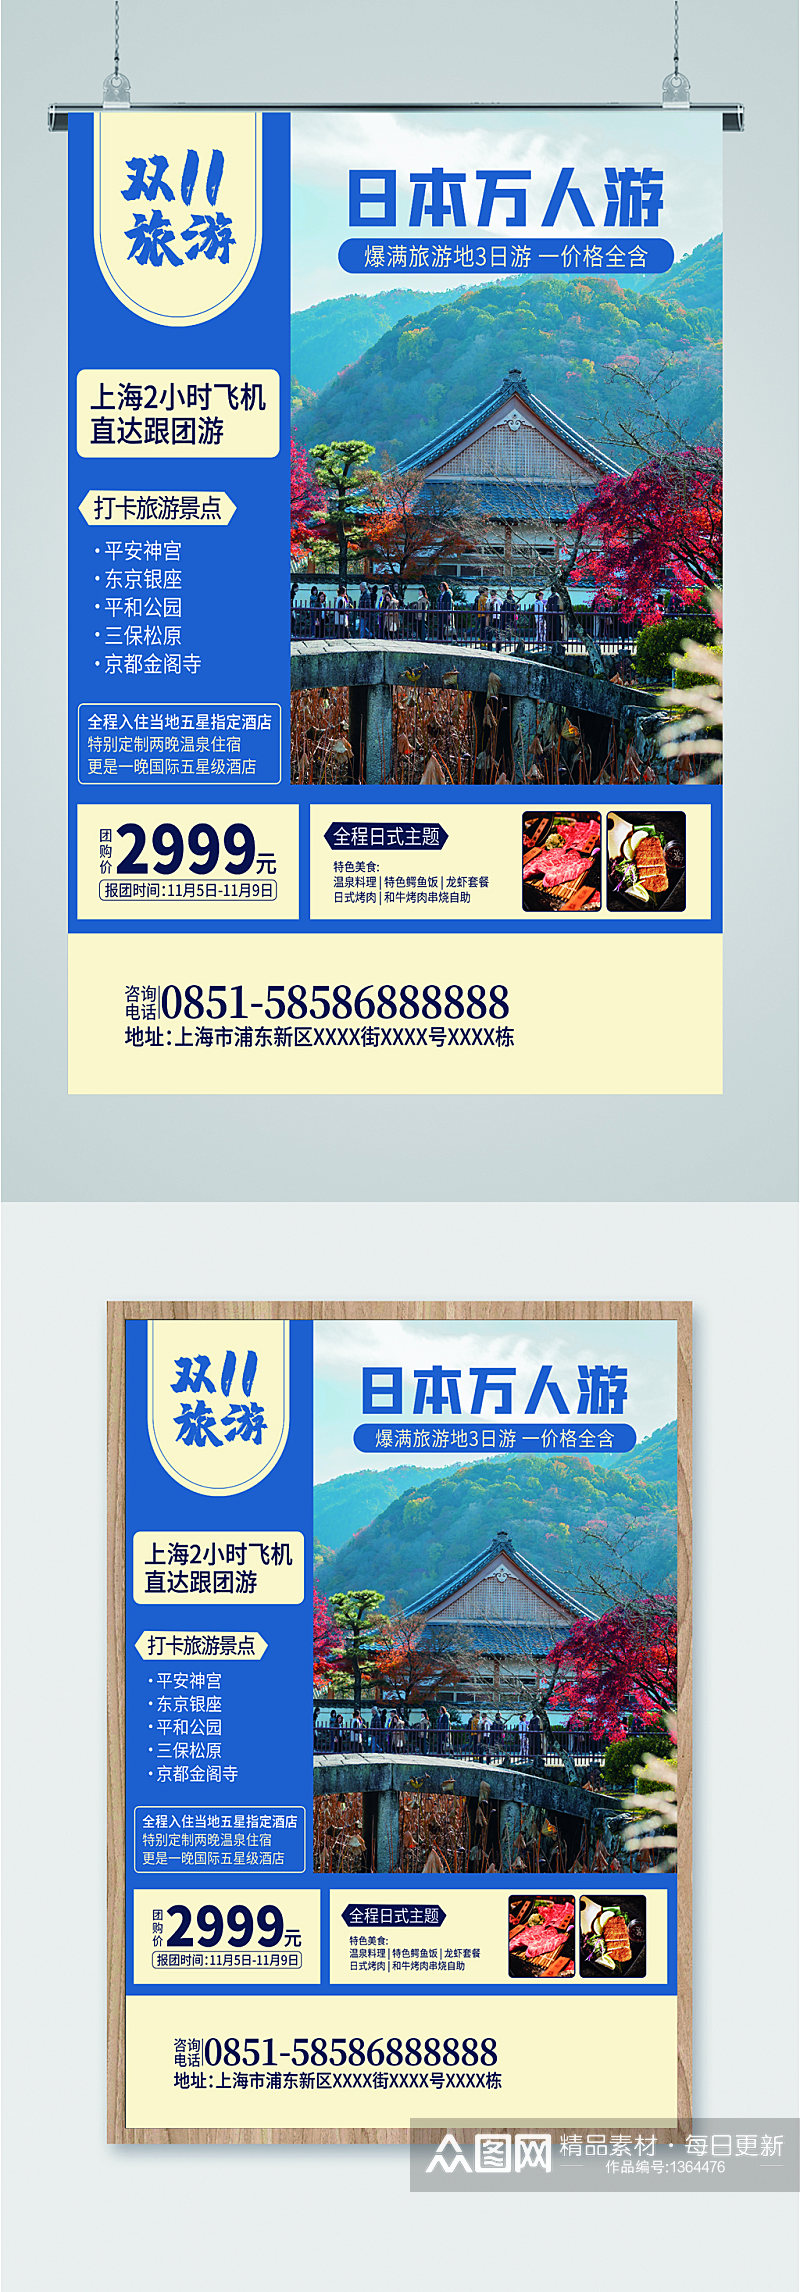 日本旅游旅行社海报素材